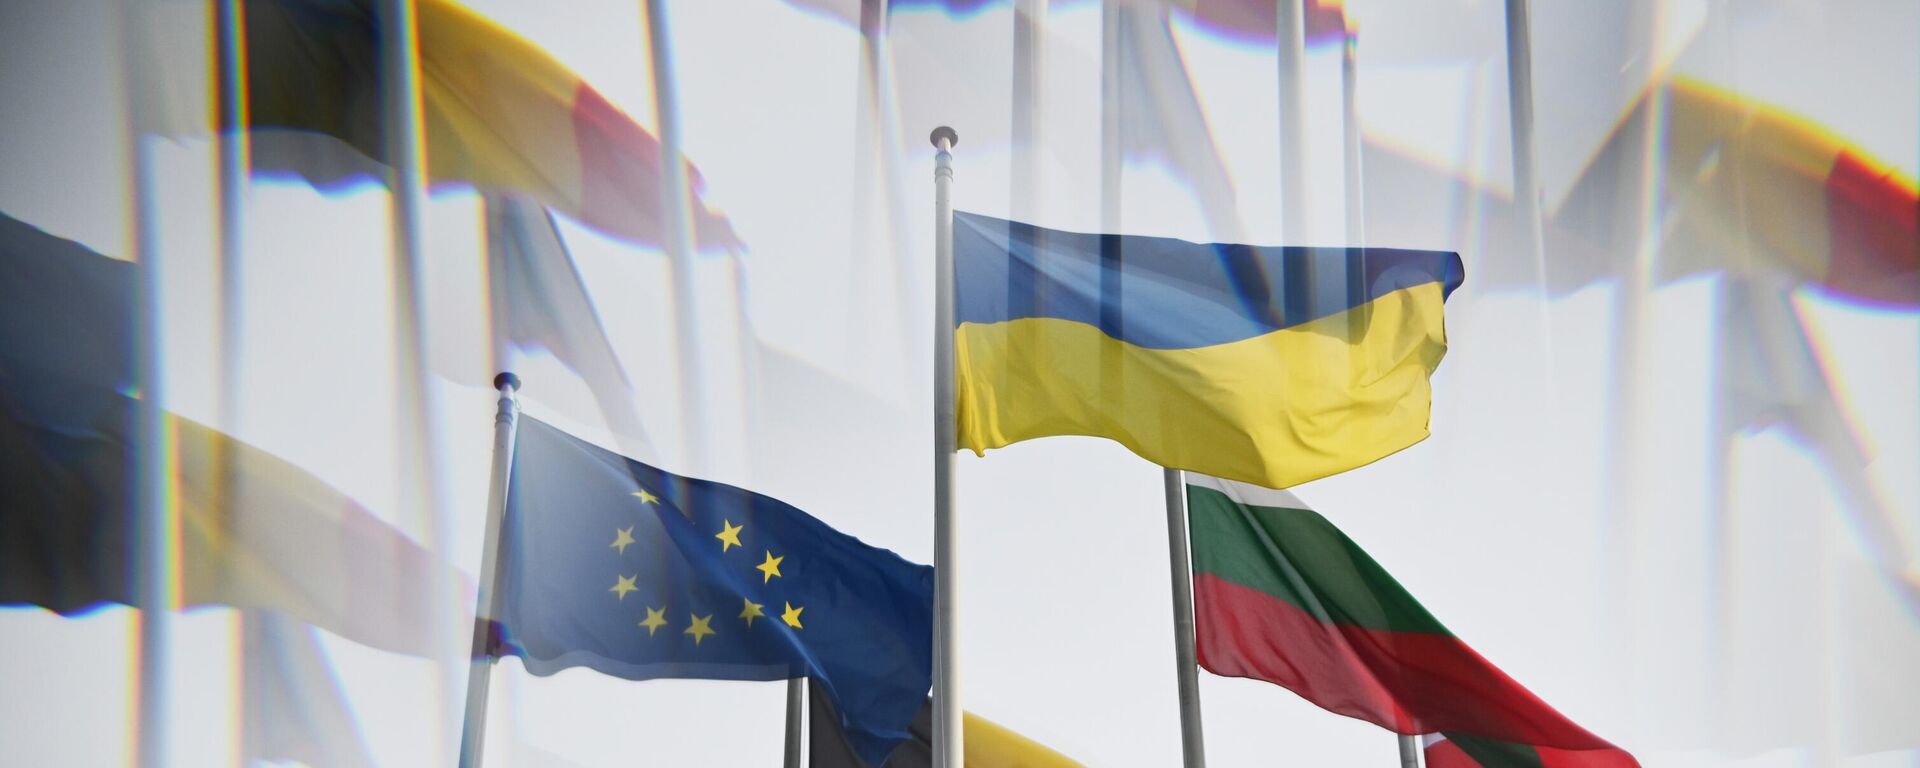 Quốc kỳ Ukraina và lá cờ có biểu tượng của Liên minh châu Âu gần tòa nhà Nghị viện châu Âu ở Strasbourg. - Sputnik Việt Nam, 1920, 01.02.2023